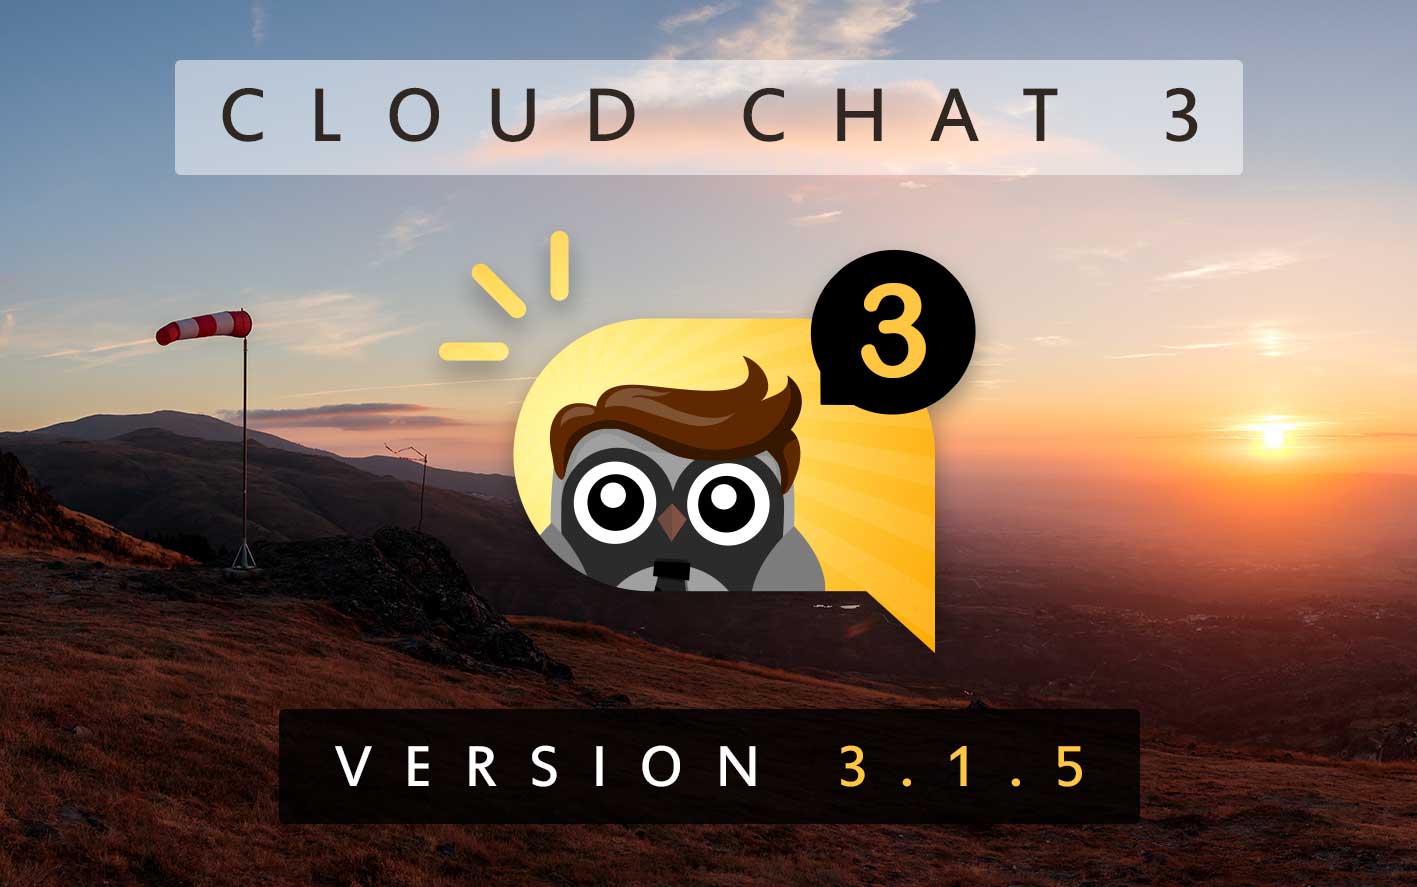 Cloud Chat 3 - Version 3.1.5